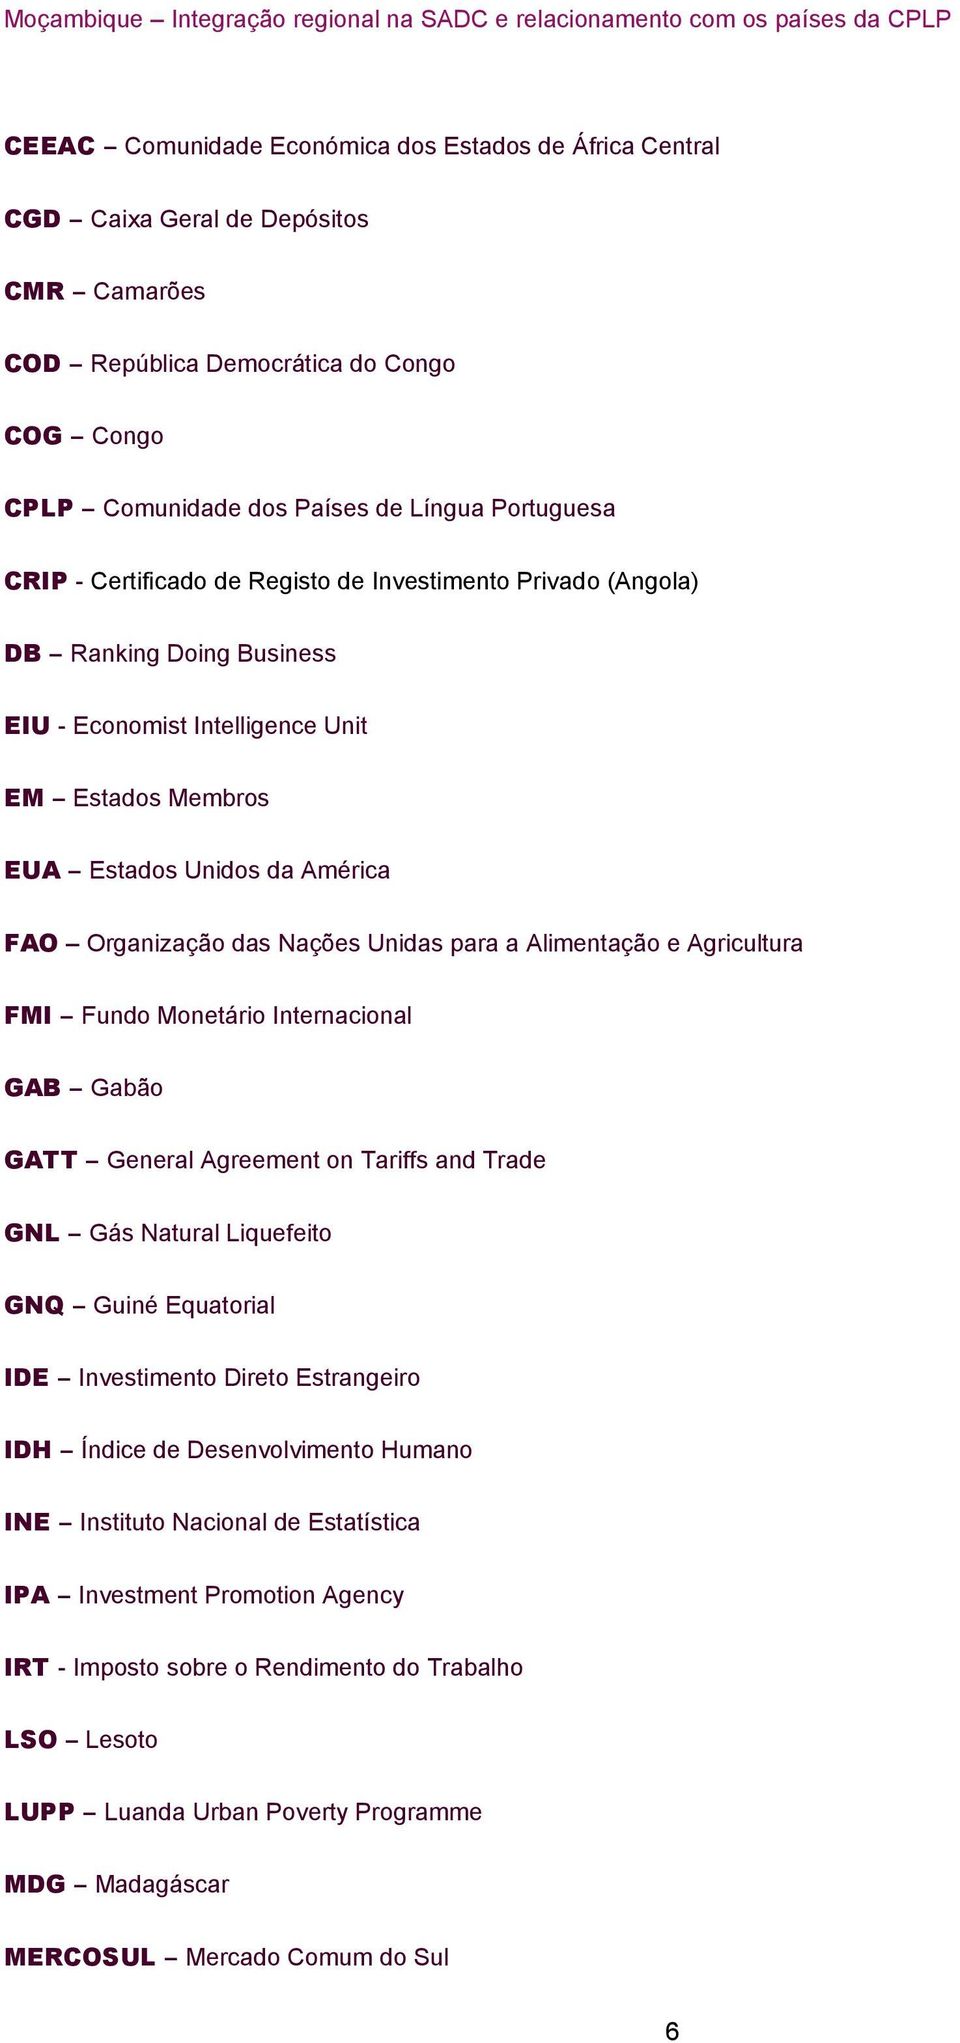 para a Alimentação e Agricultura FMI Fundo Monetário Internacional GAB Gabão GATT General Agreement on Tariffs and Trade GNL Gás Natural Liquefeito GNQ Guiné Equatorial IDE Investimento Direto